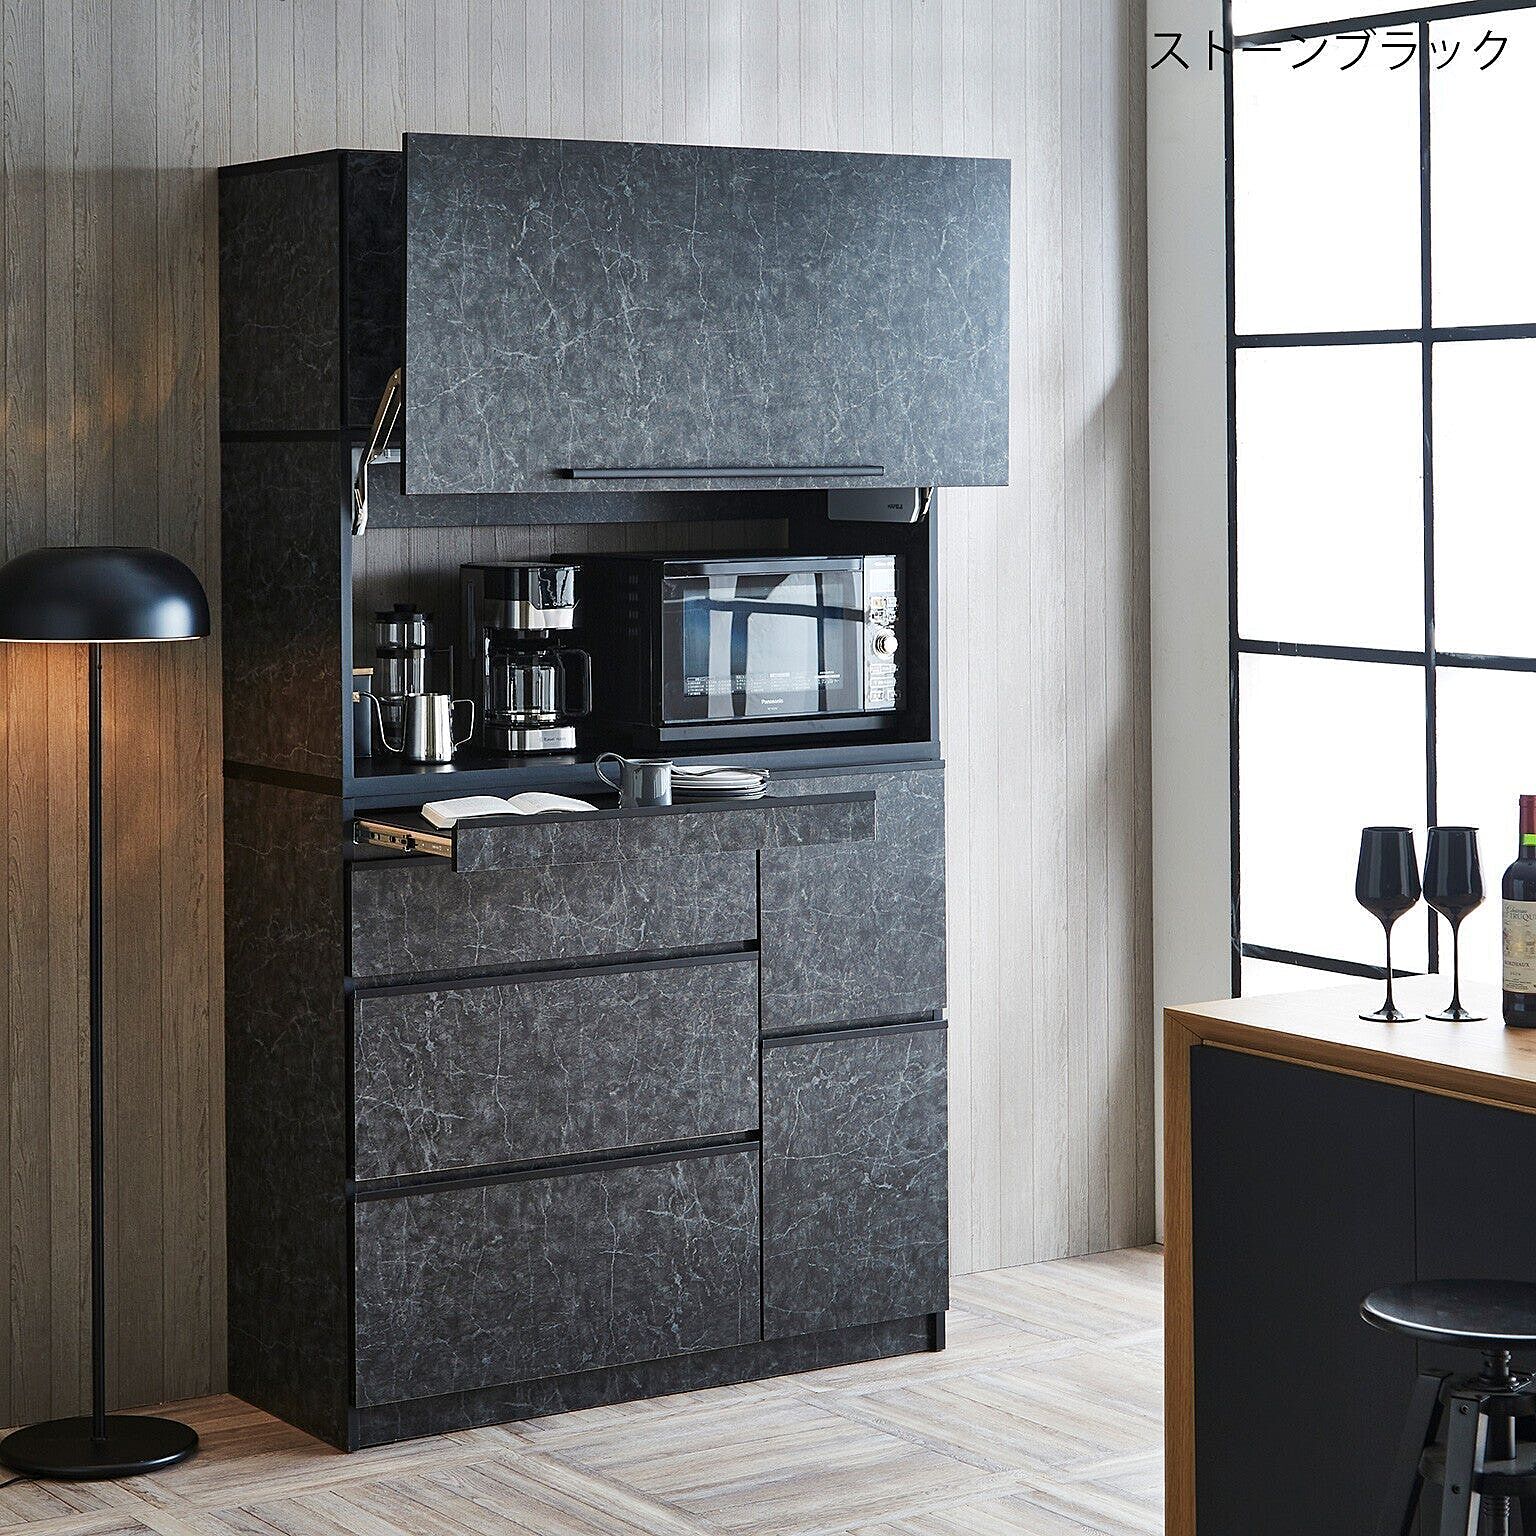 食器棚 キッチンボード レンジボード レンジ台 ナポリ スライドアップ扉 幅119.5cm 完成品 日本製